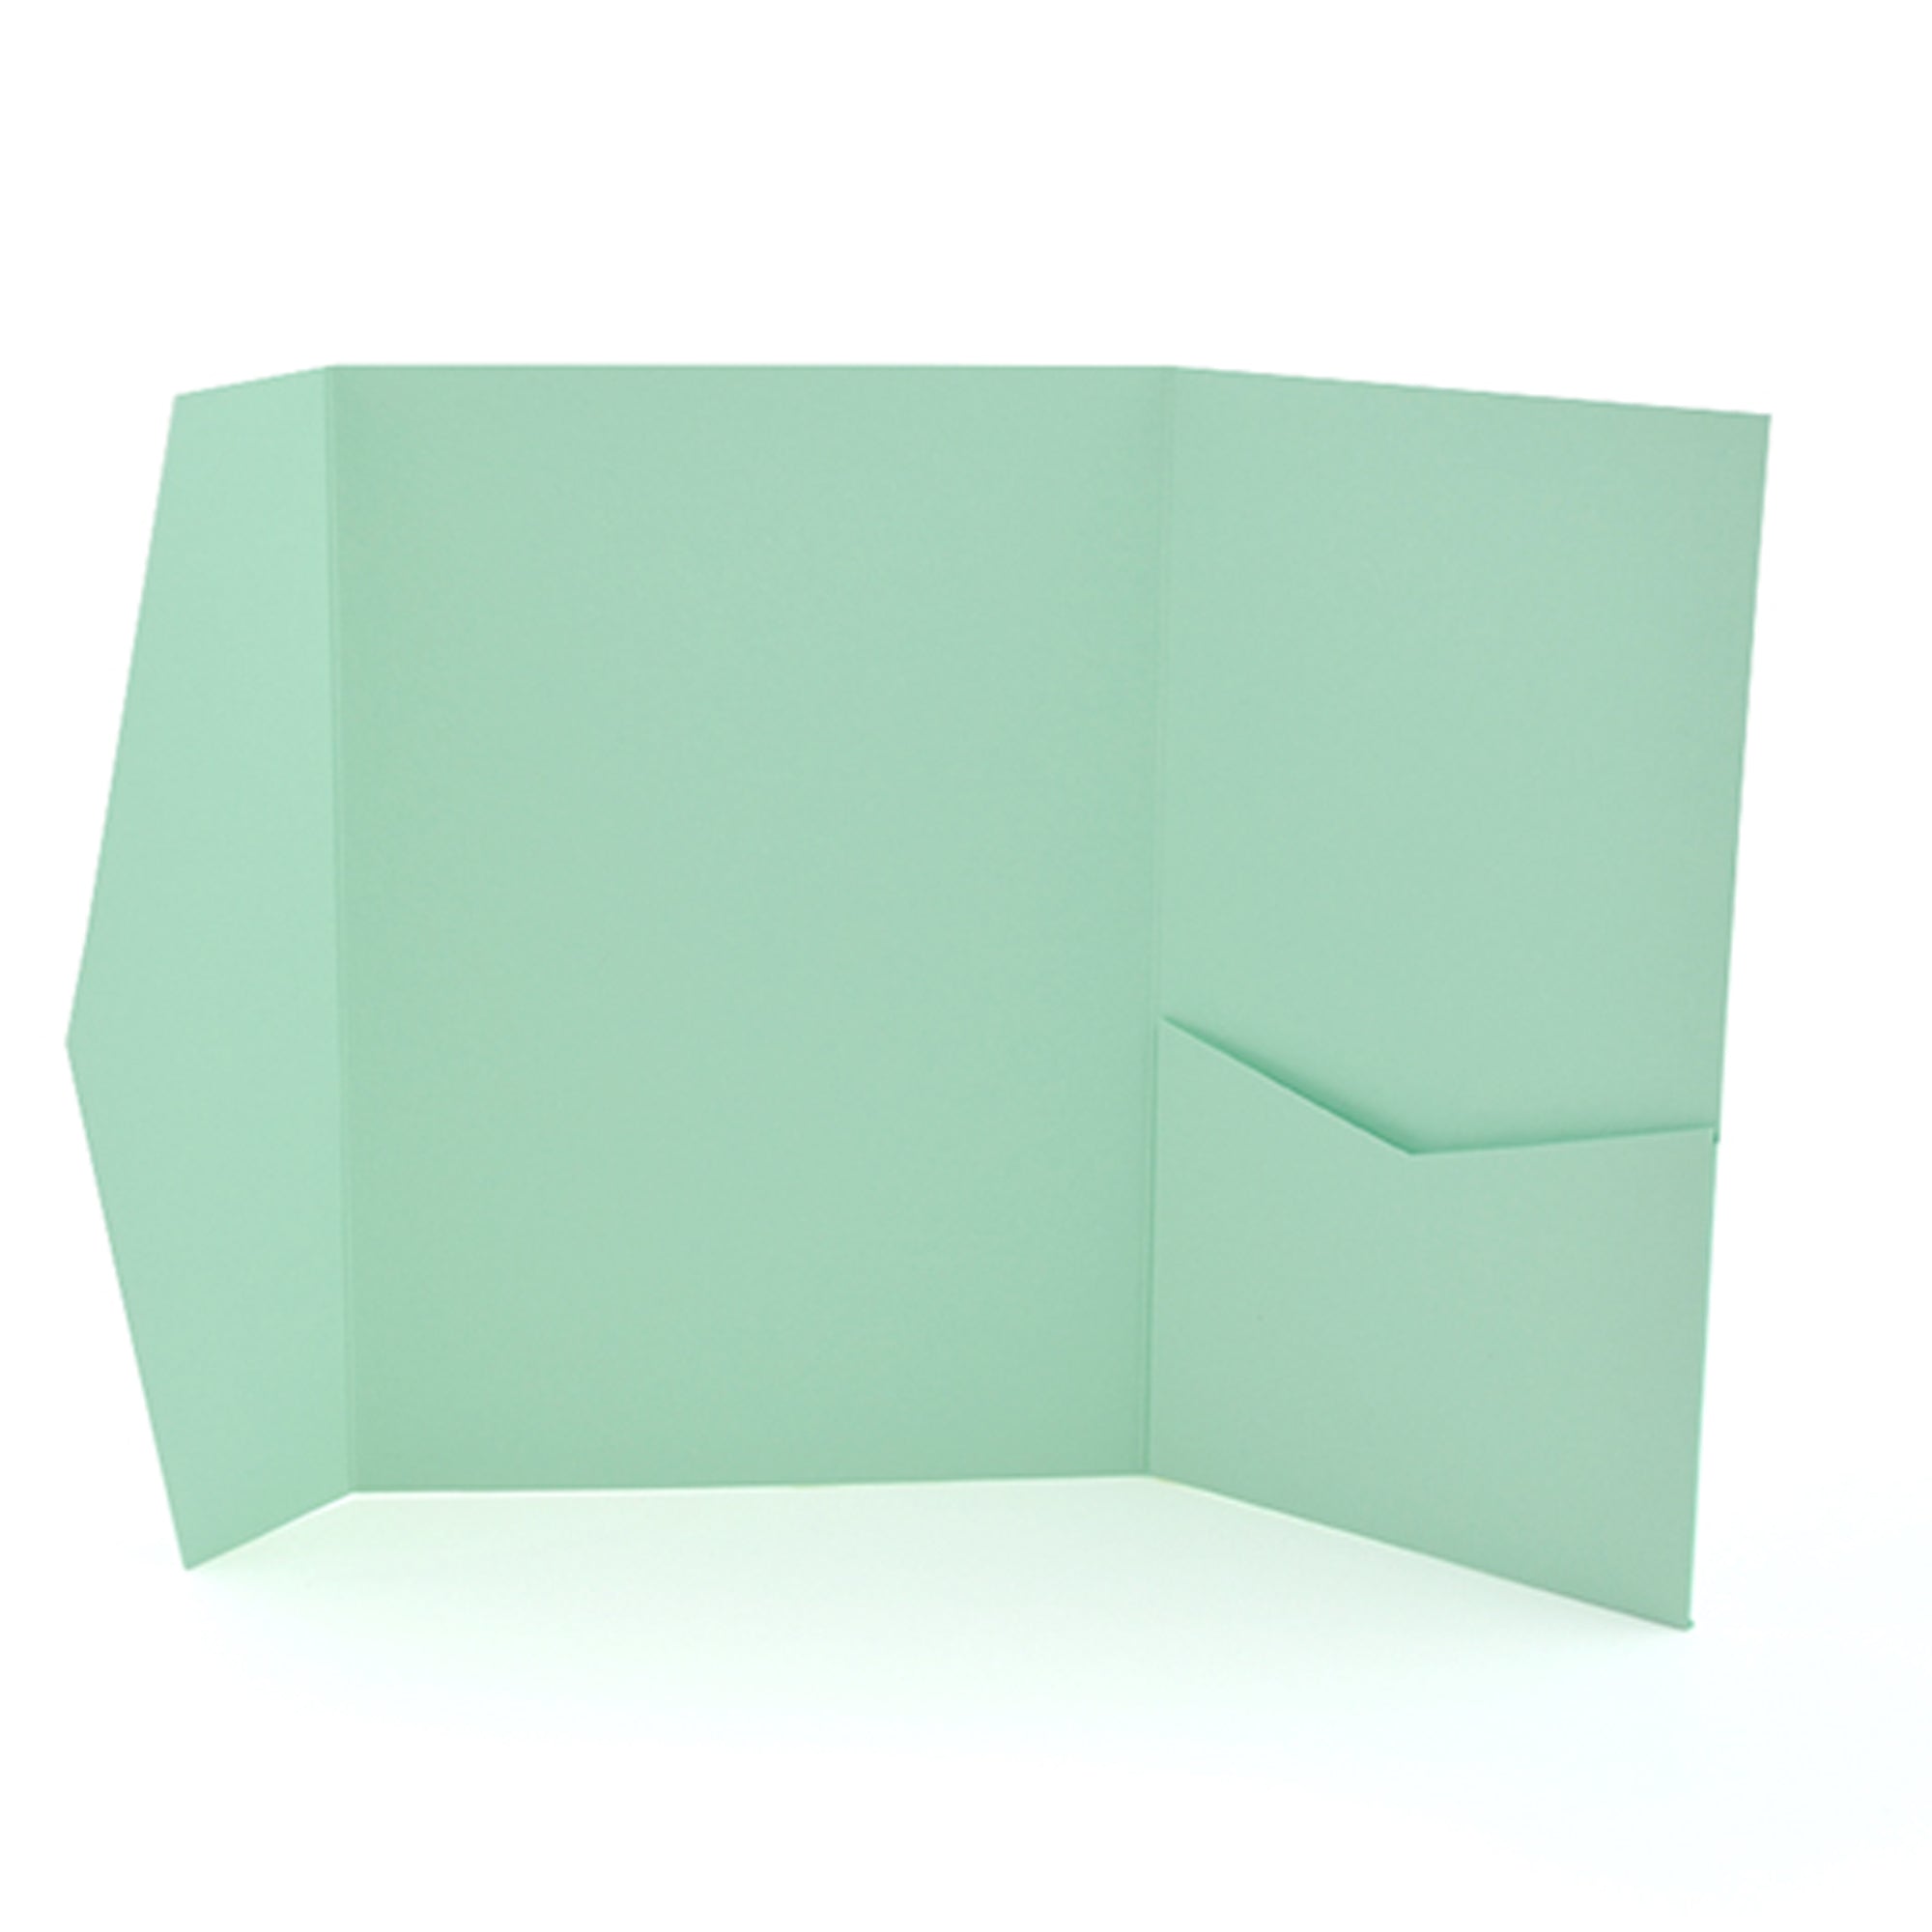 Pocket Wallet Fold Invitation Holder DIY Wedding Supplies Mint Green